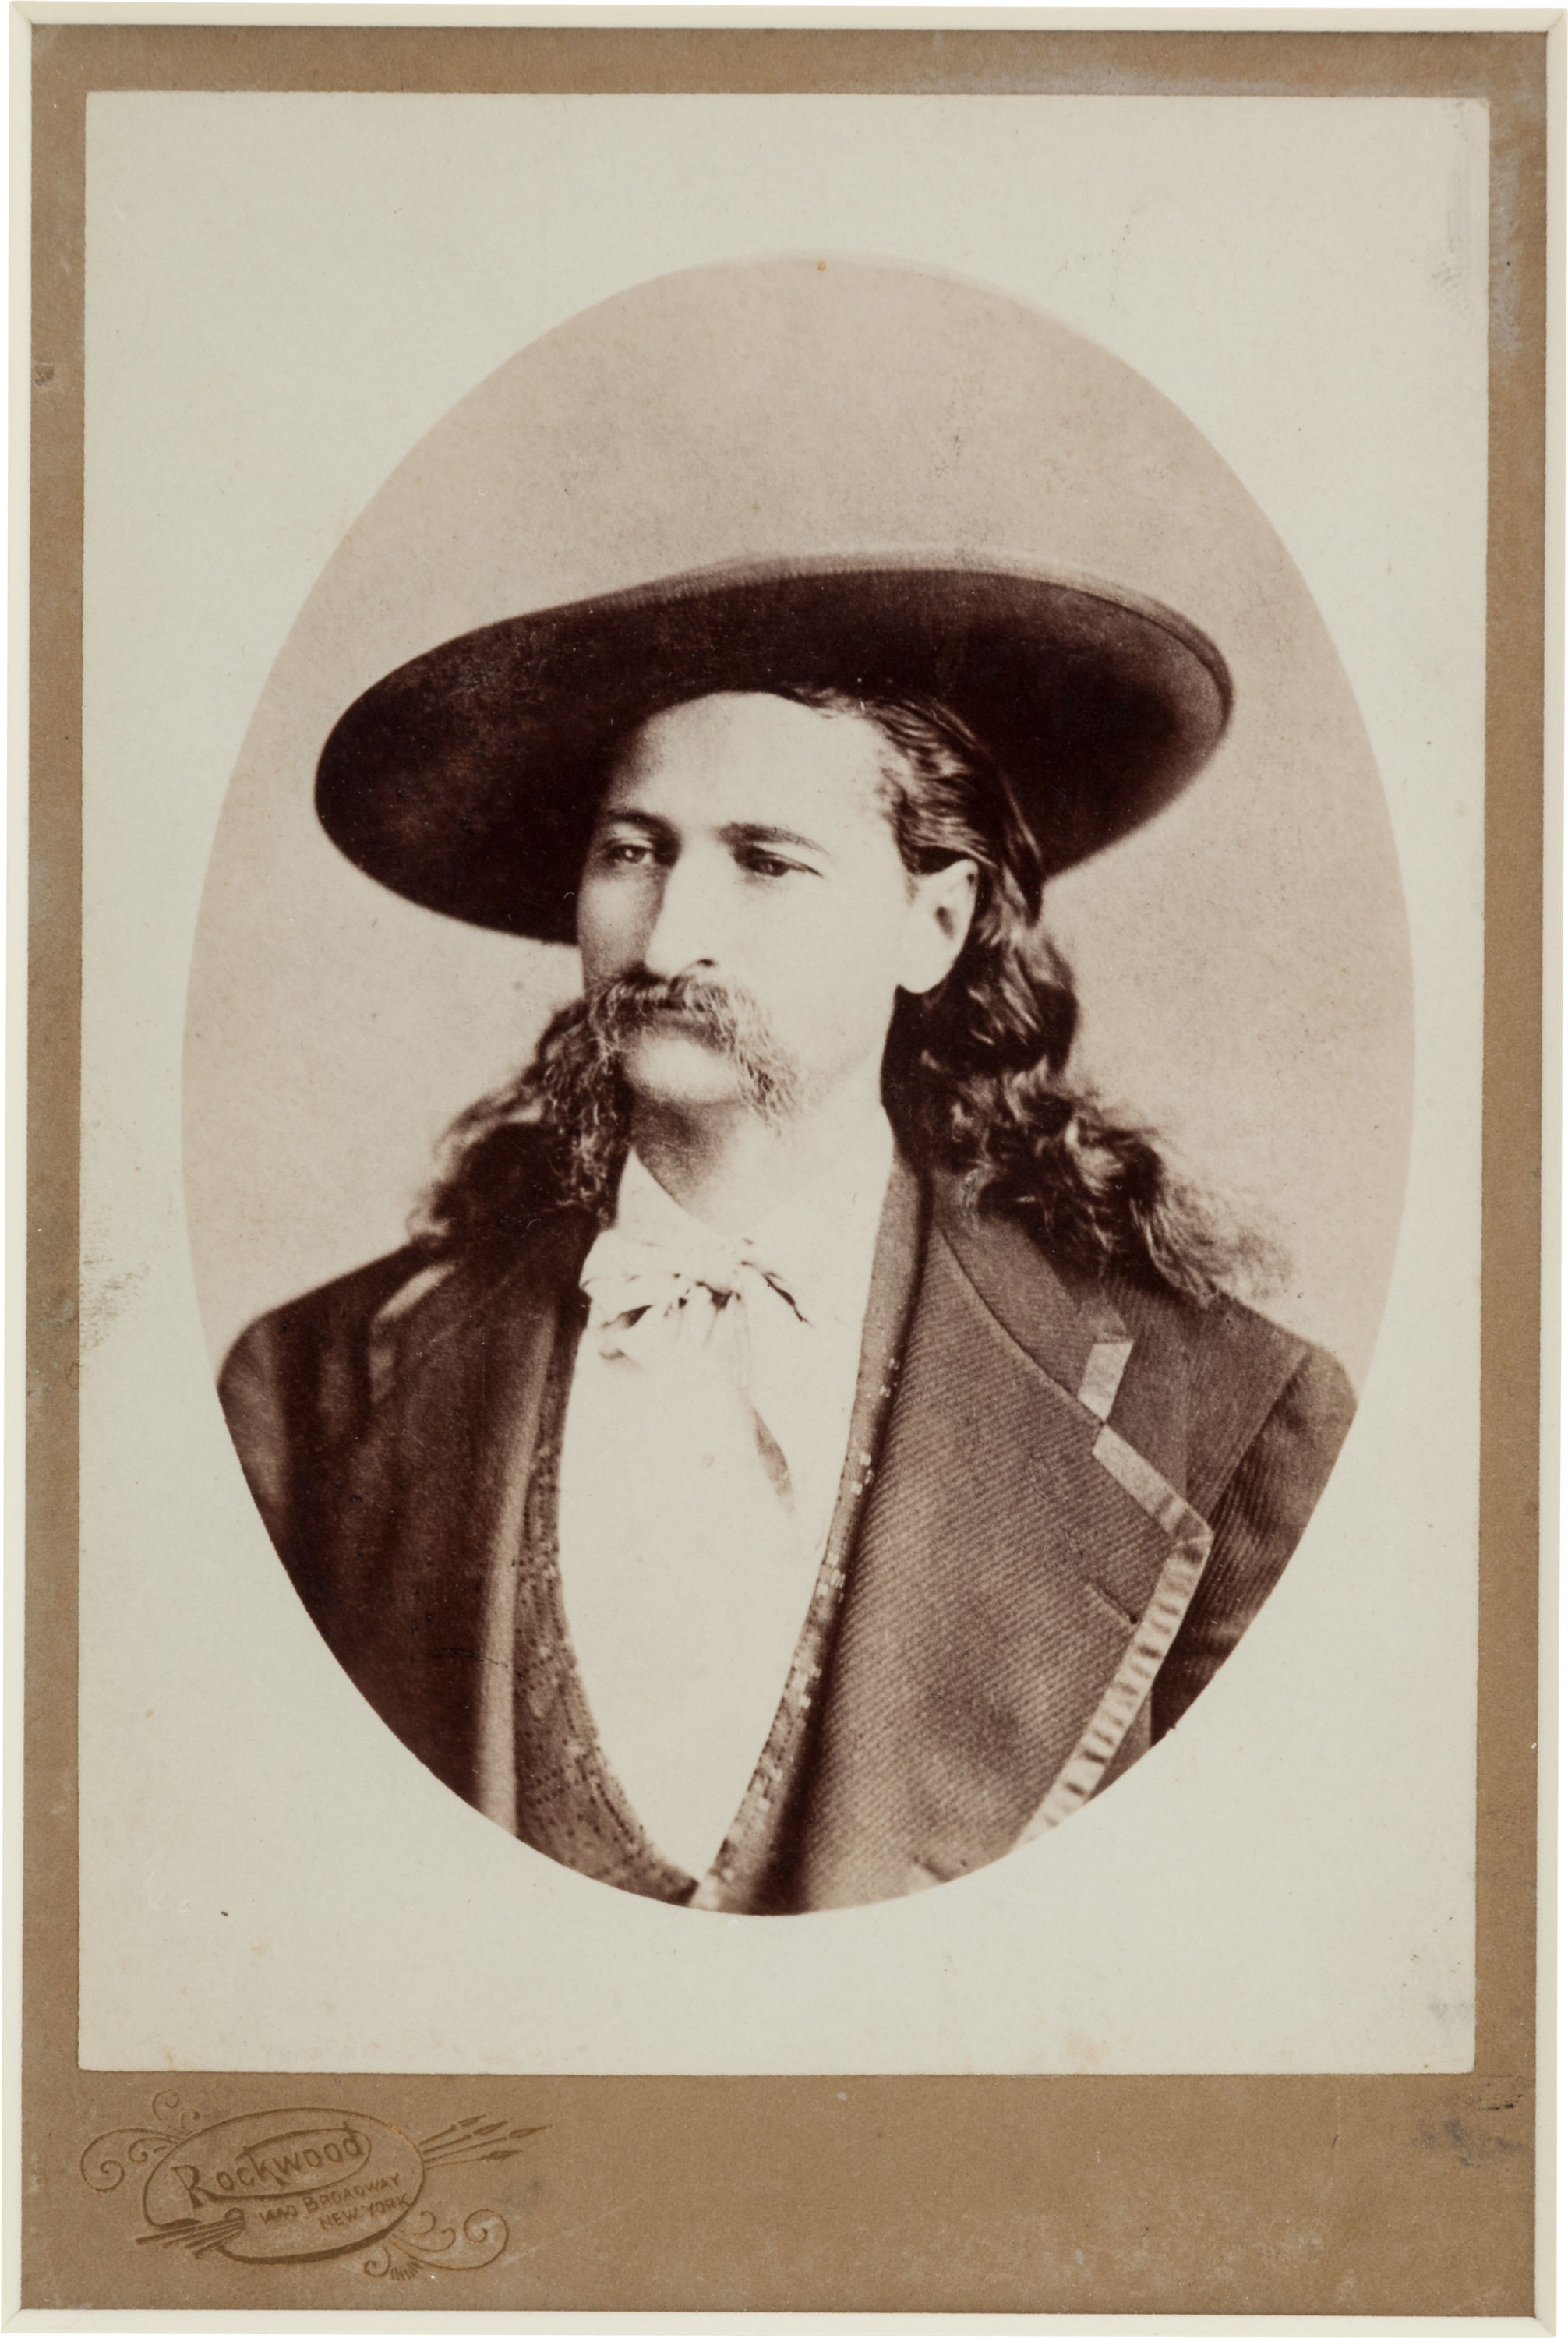 File:Wild Bill Hickok by Rockwood, 1873.jpg - Wikimedia Commons